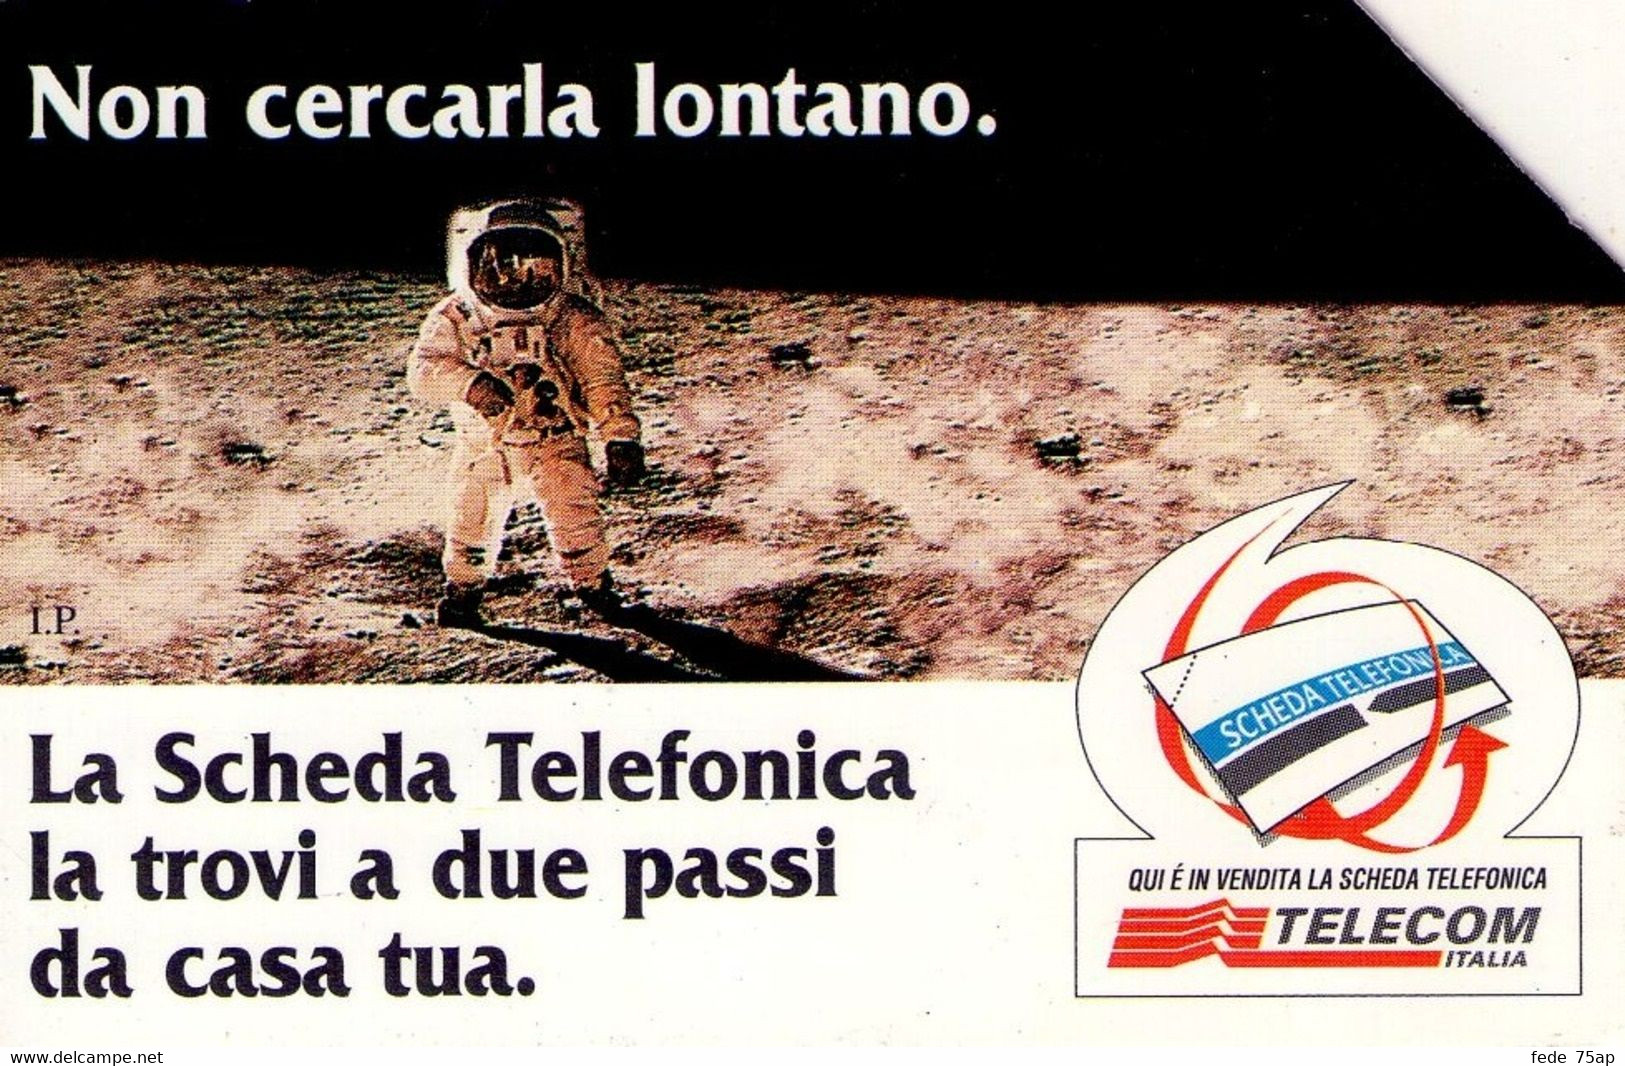 Scheda Telefonica TELECOM ITALIA "NON CERCARLA LONTANO - LUNA" - Catalogo Golden Lira Nr. 592, Usata - SPAZIO - Espacio